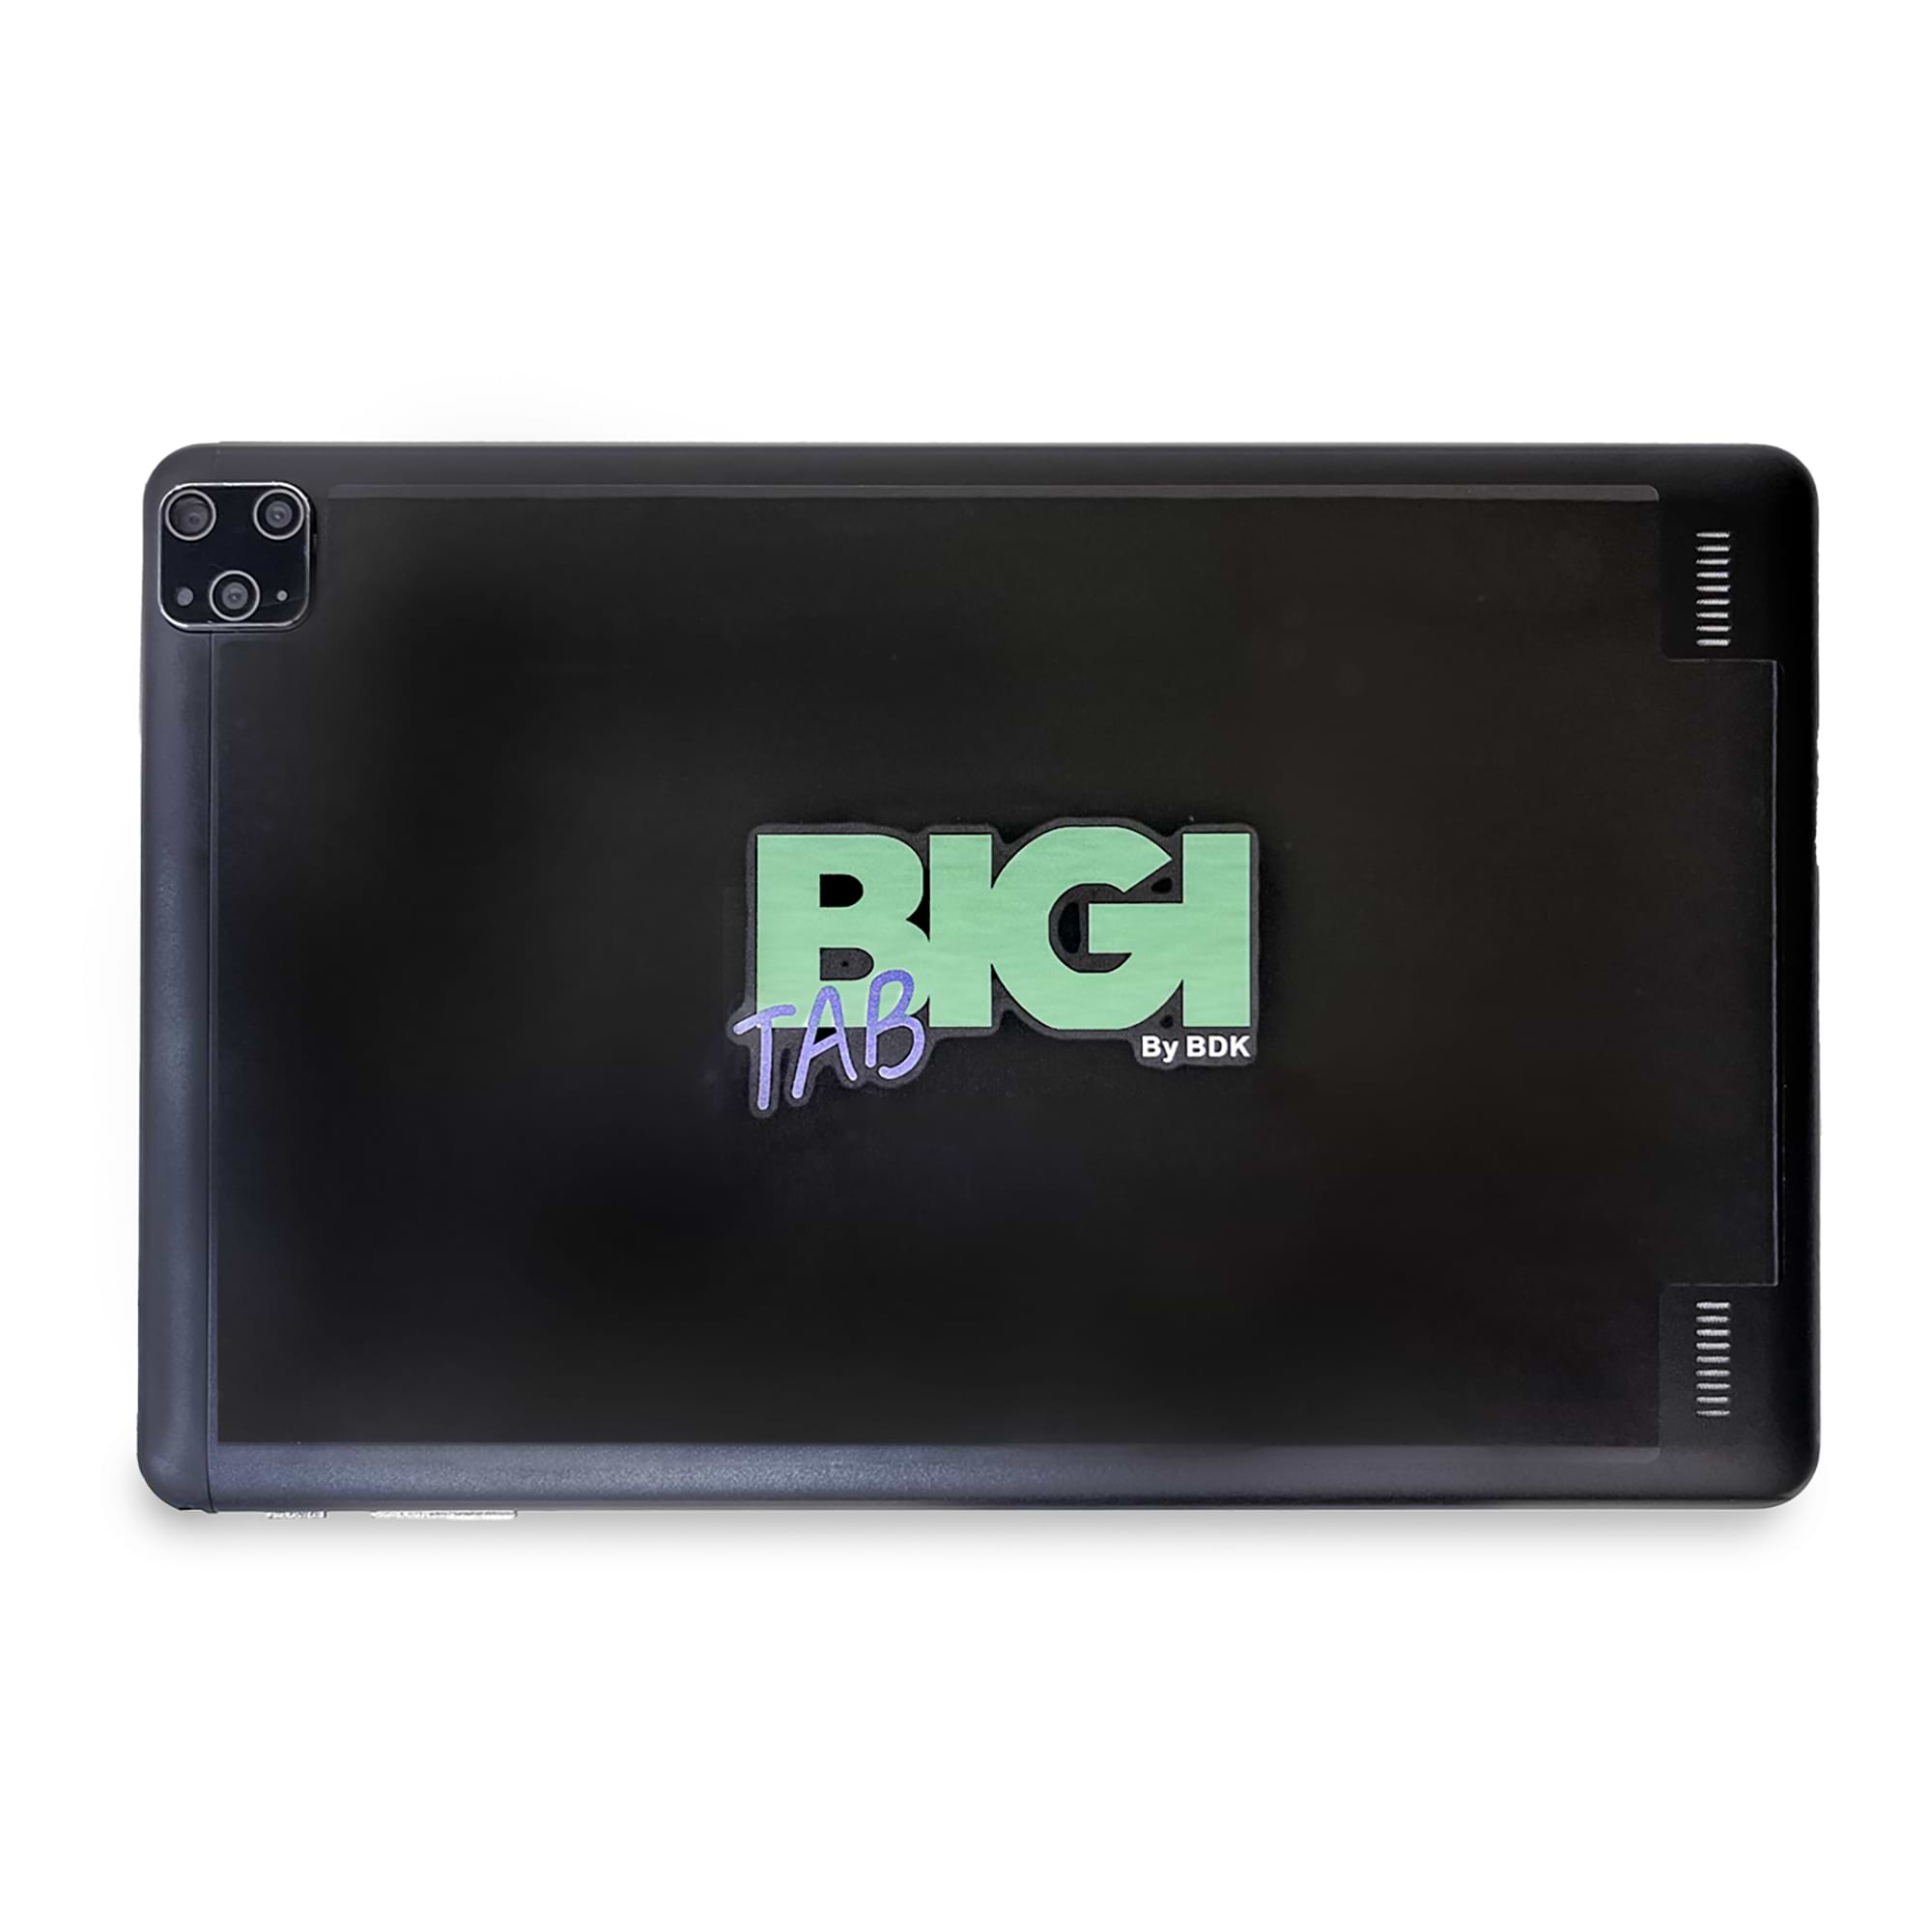 טאבלט לילדים Bigi Tab 32GB 3GB RAM LTE עם מנוי שלושה חודשים לאפליקצית Bigi - צבע שחור שנה אחריות ע